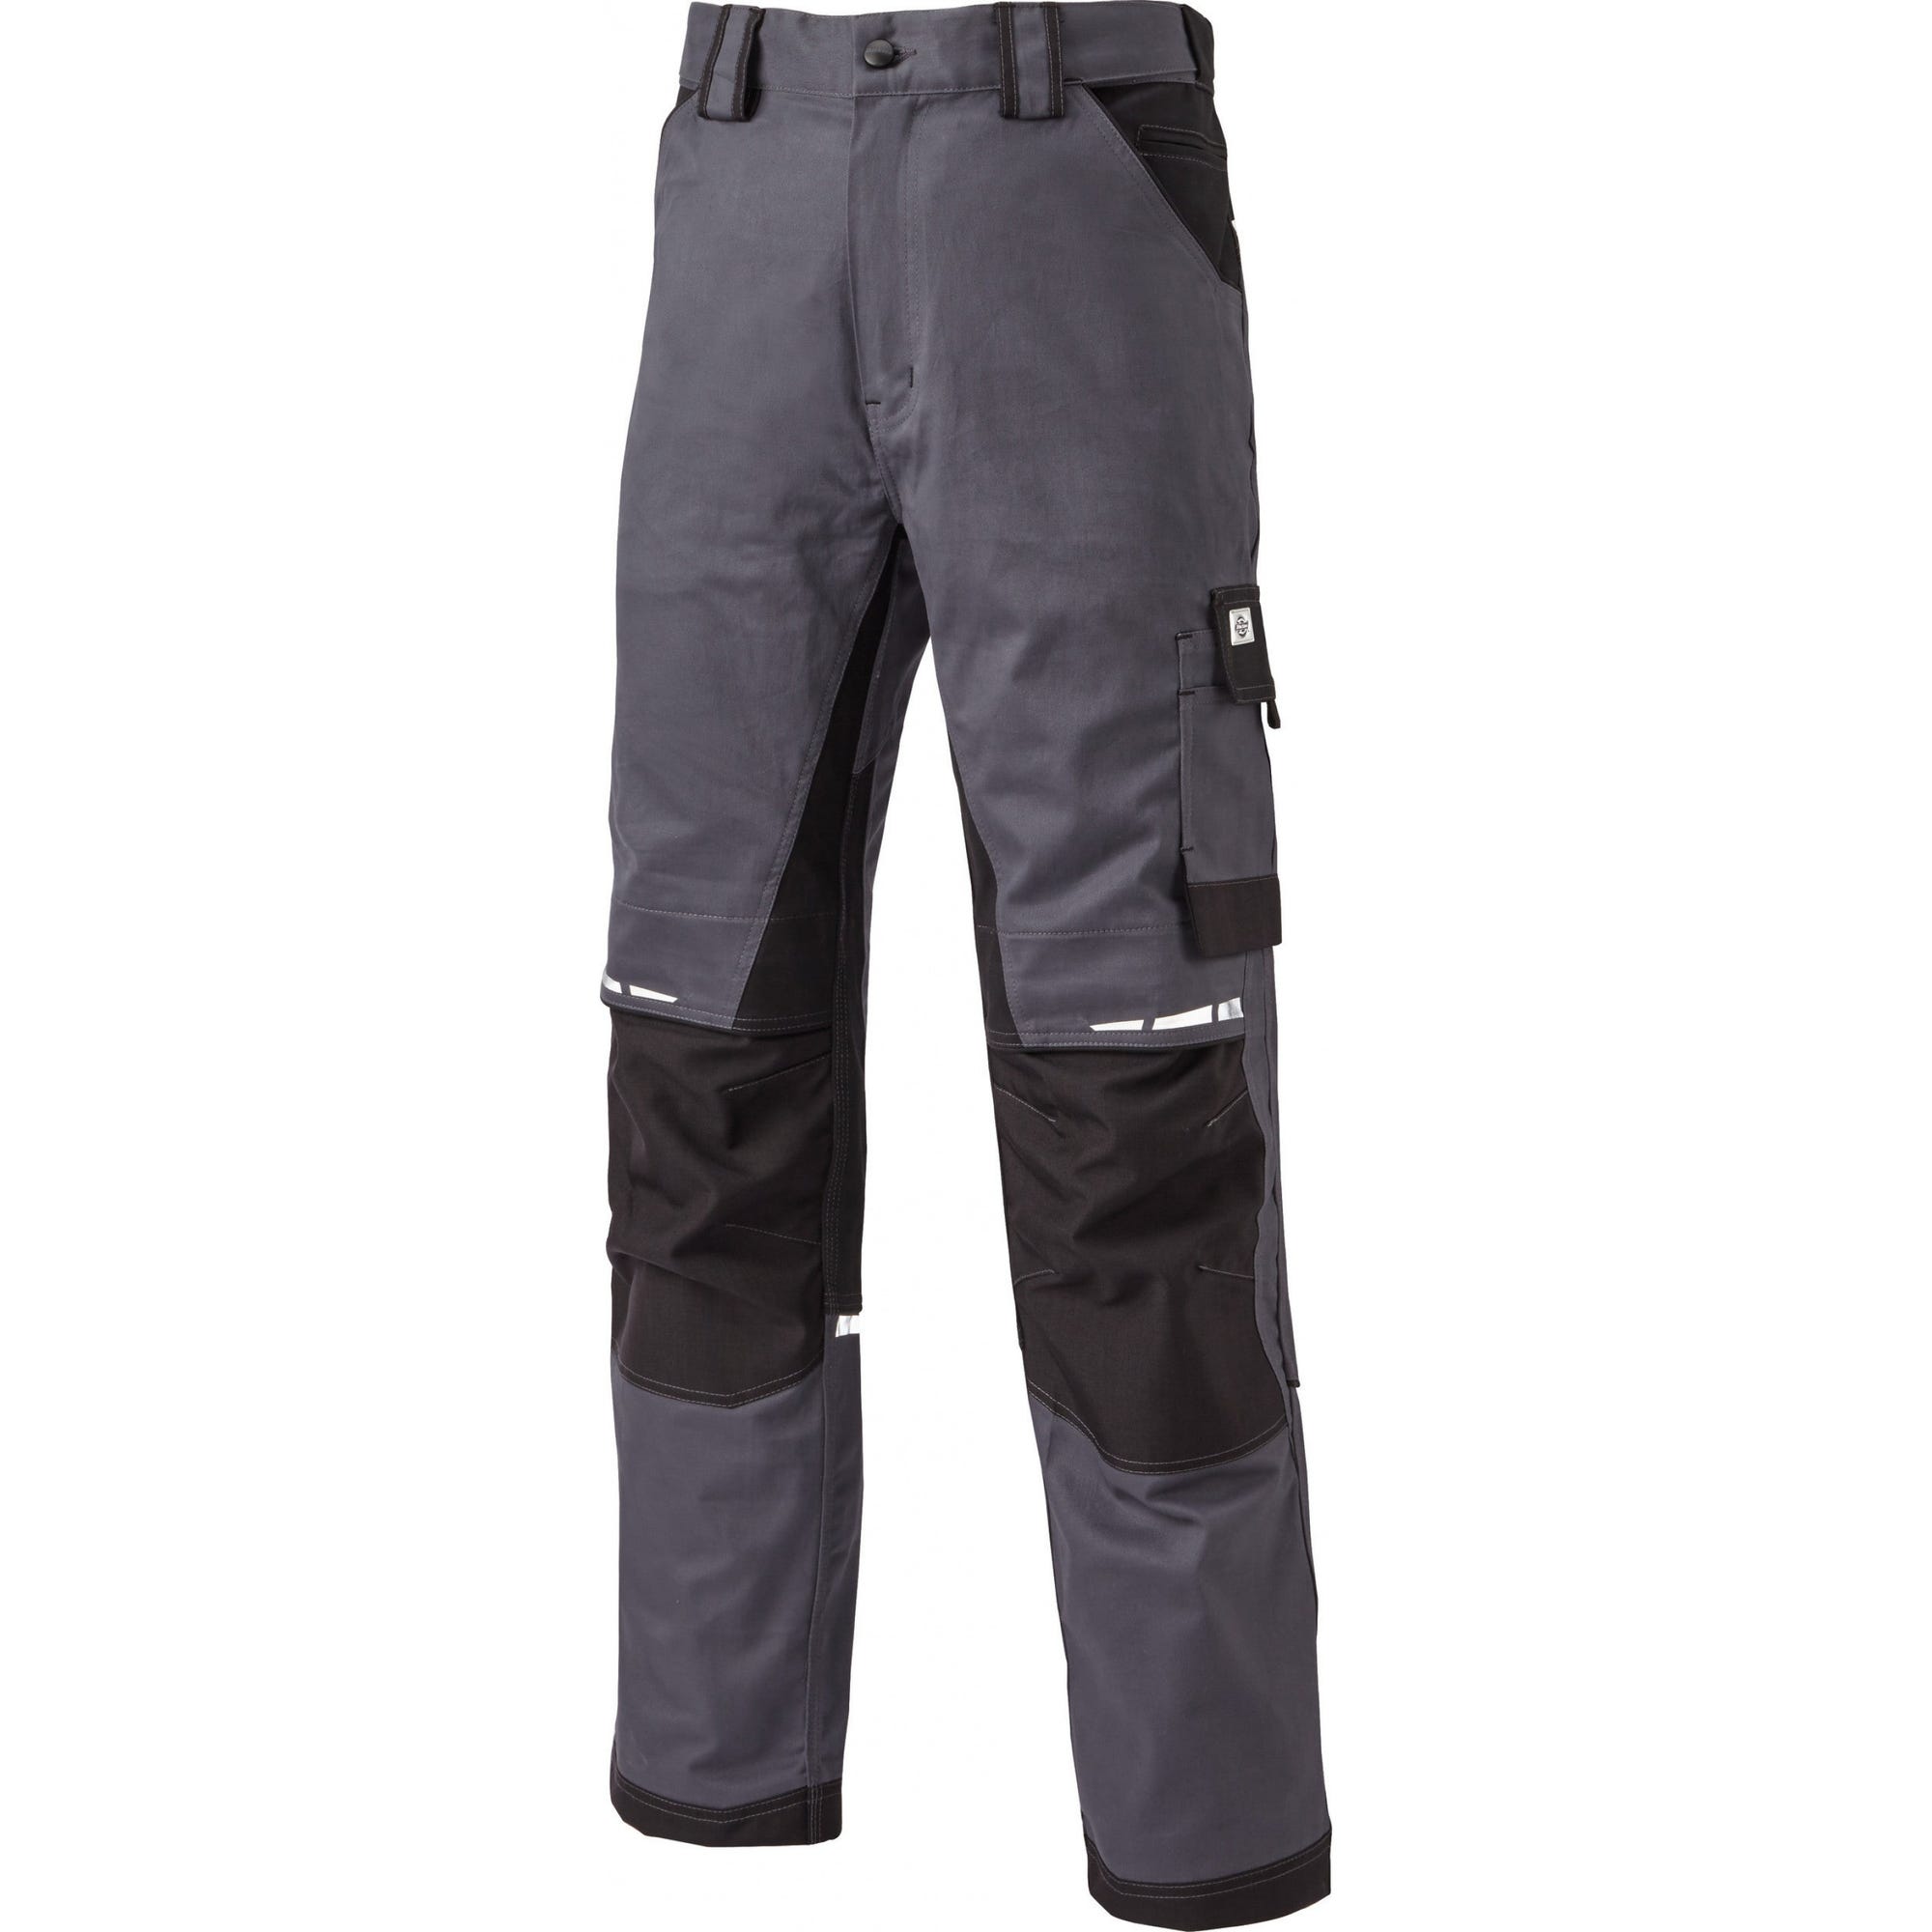 Pantalon de travail GDT Premium gris/noir - Dickies - Taille 42 5